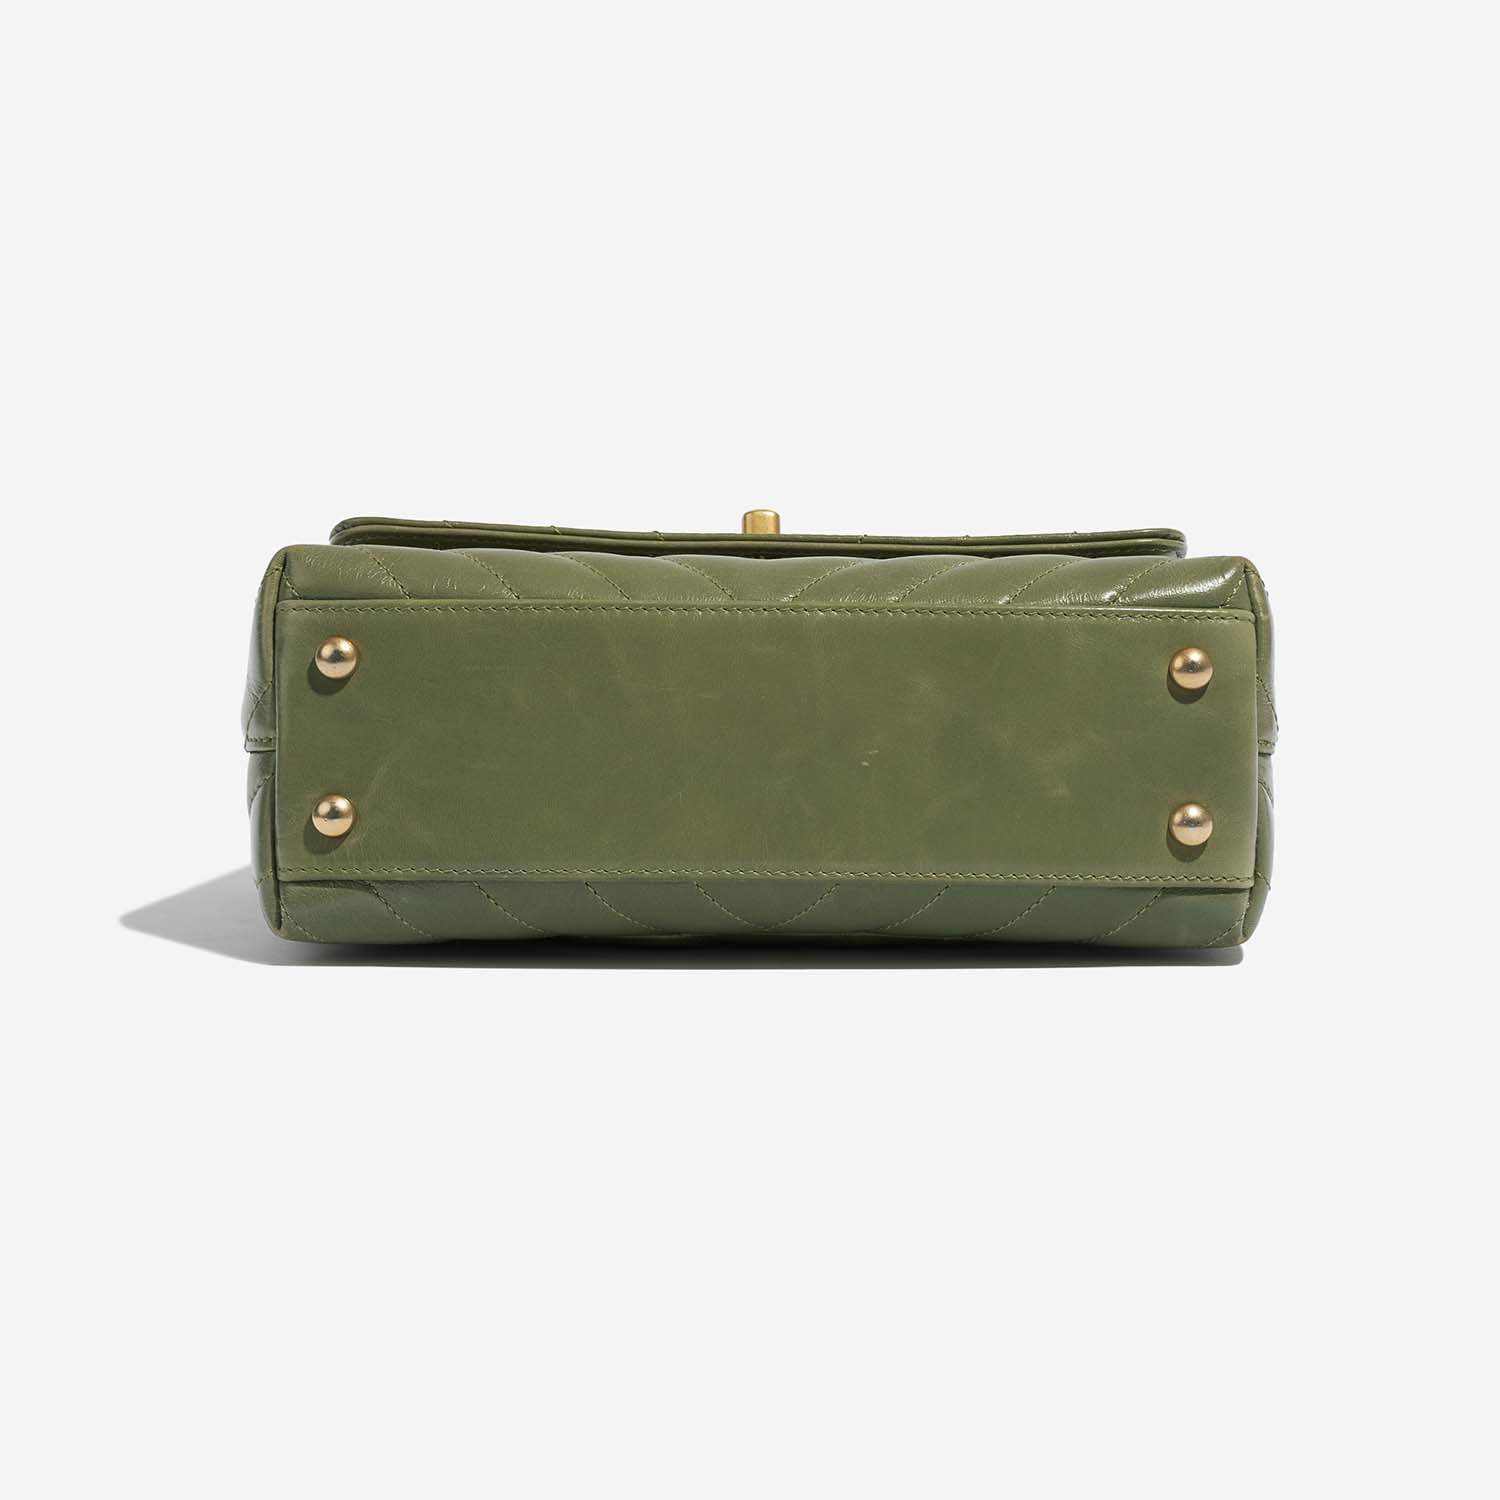 Chanel TimelessHandle Small Green Bottom | Verkaufen Sie Ihre Designer-Tasche auf Saclab.com